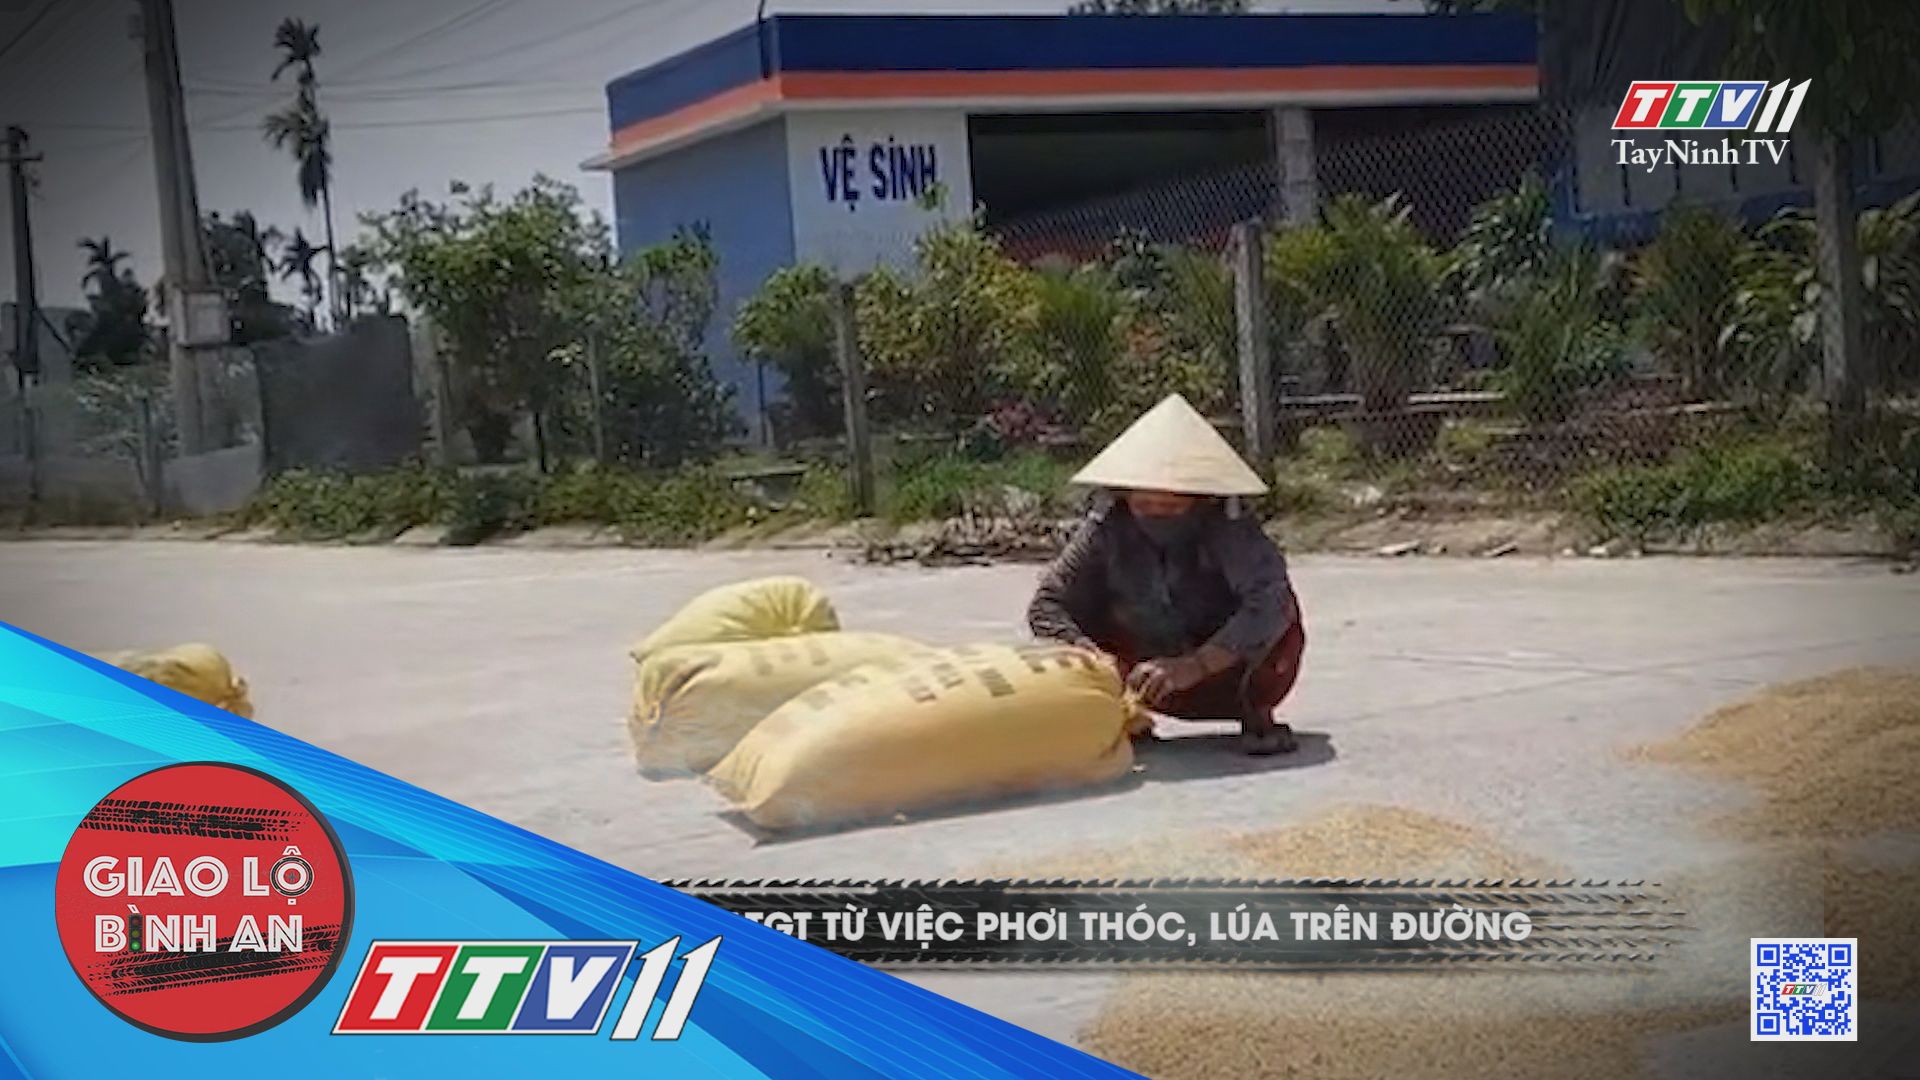 Mất ATGT từ việc phơi thóc, lúa trên đường | Giao lộ bình an | TayNinhTV